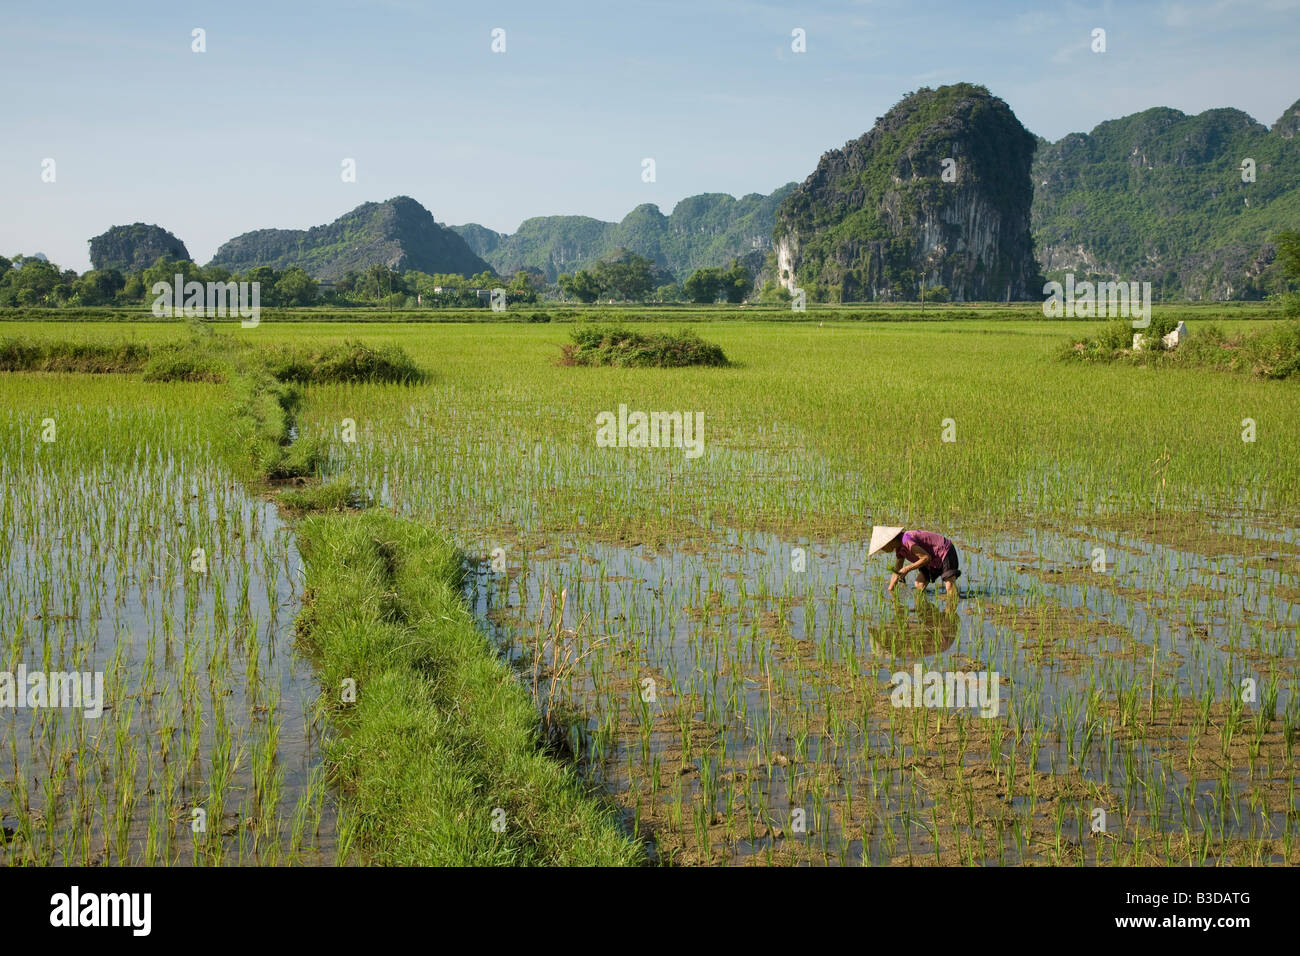 Une Vietnamienne travaillant dans les rizières à Tam Coc dans le centre-nord du Vietnam. Affectueusement appelé, la baie d'Halong sur terre. Banque D'Images